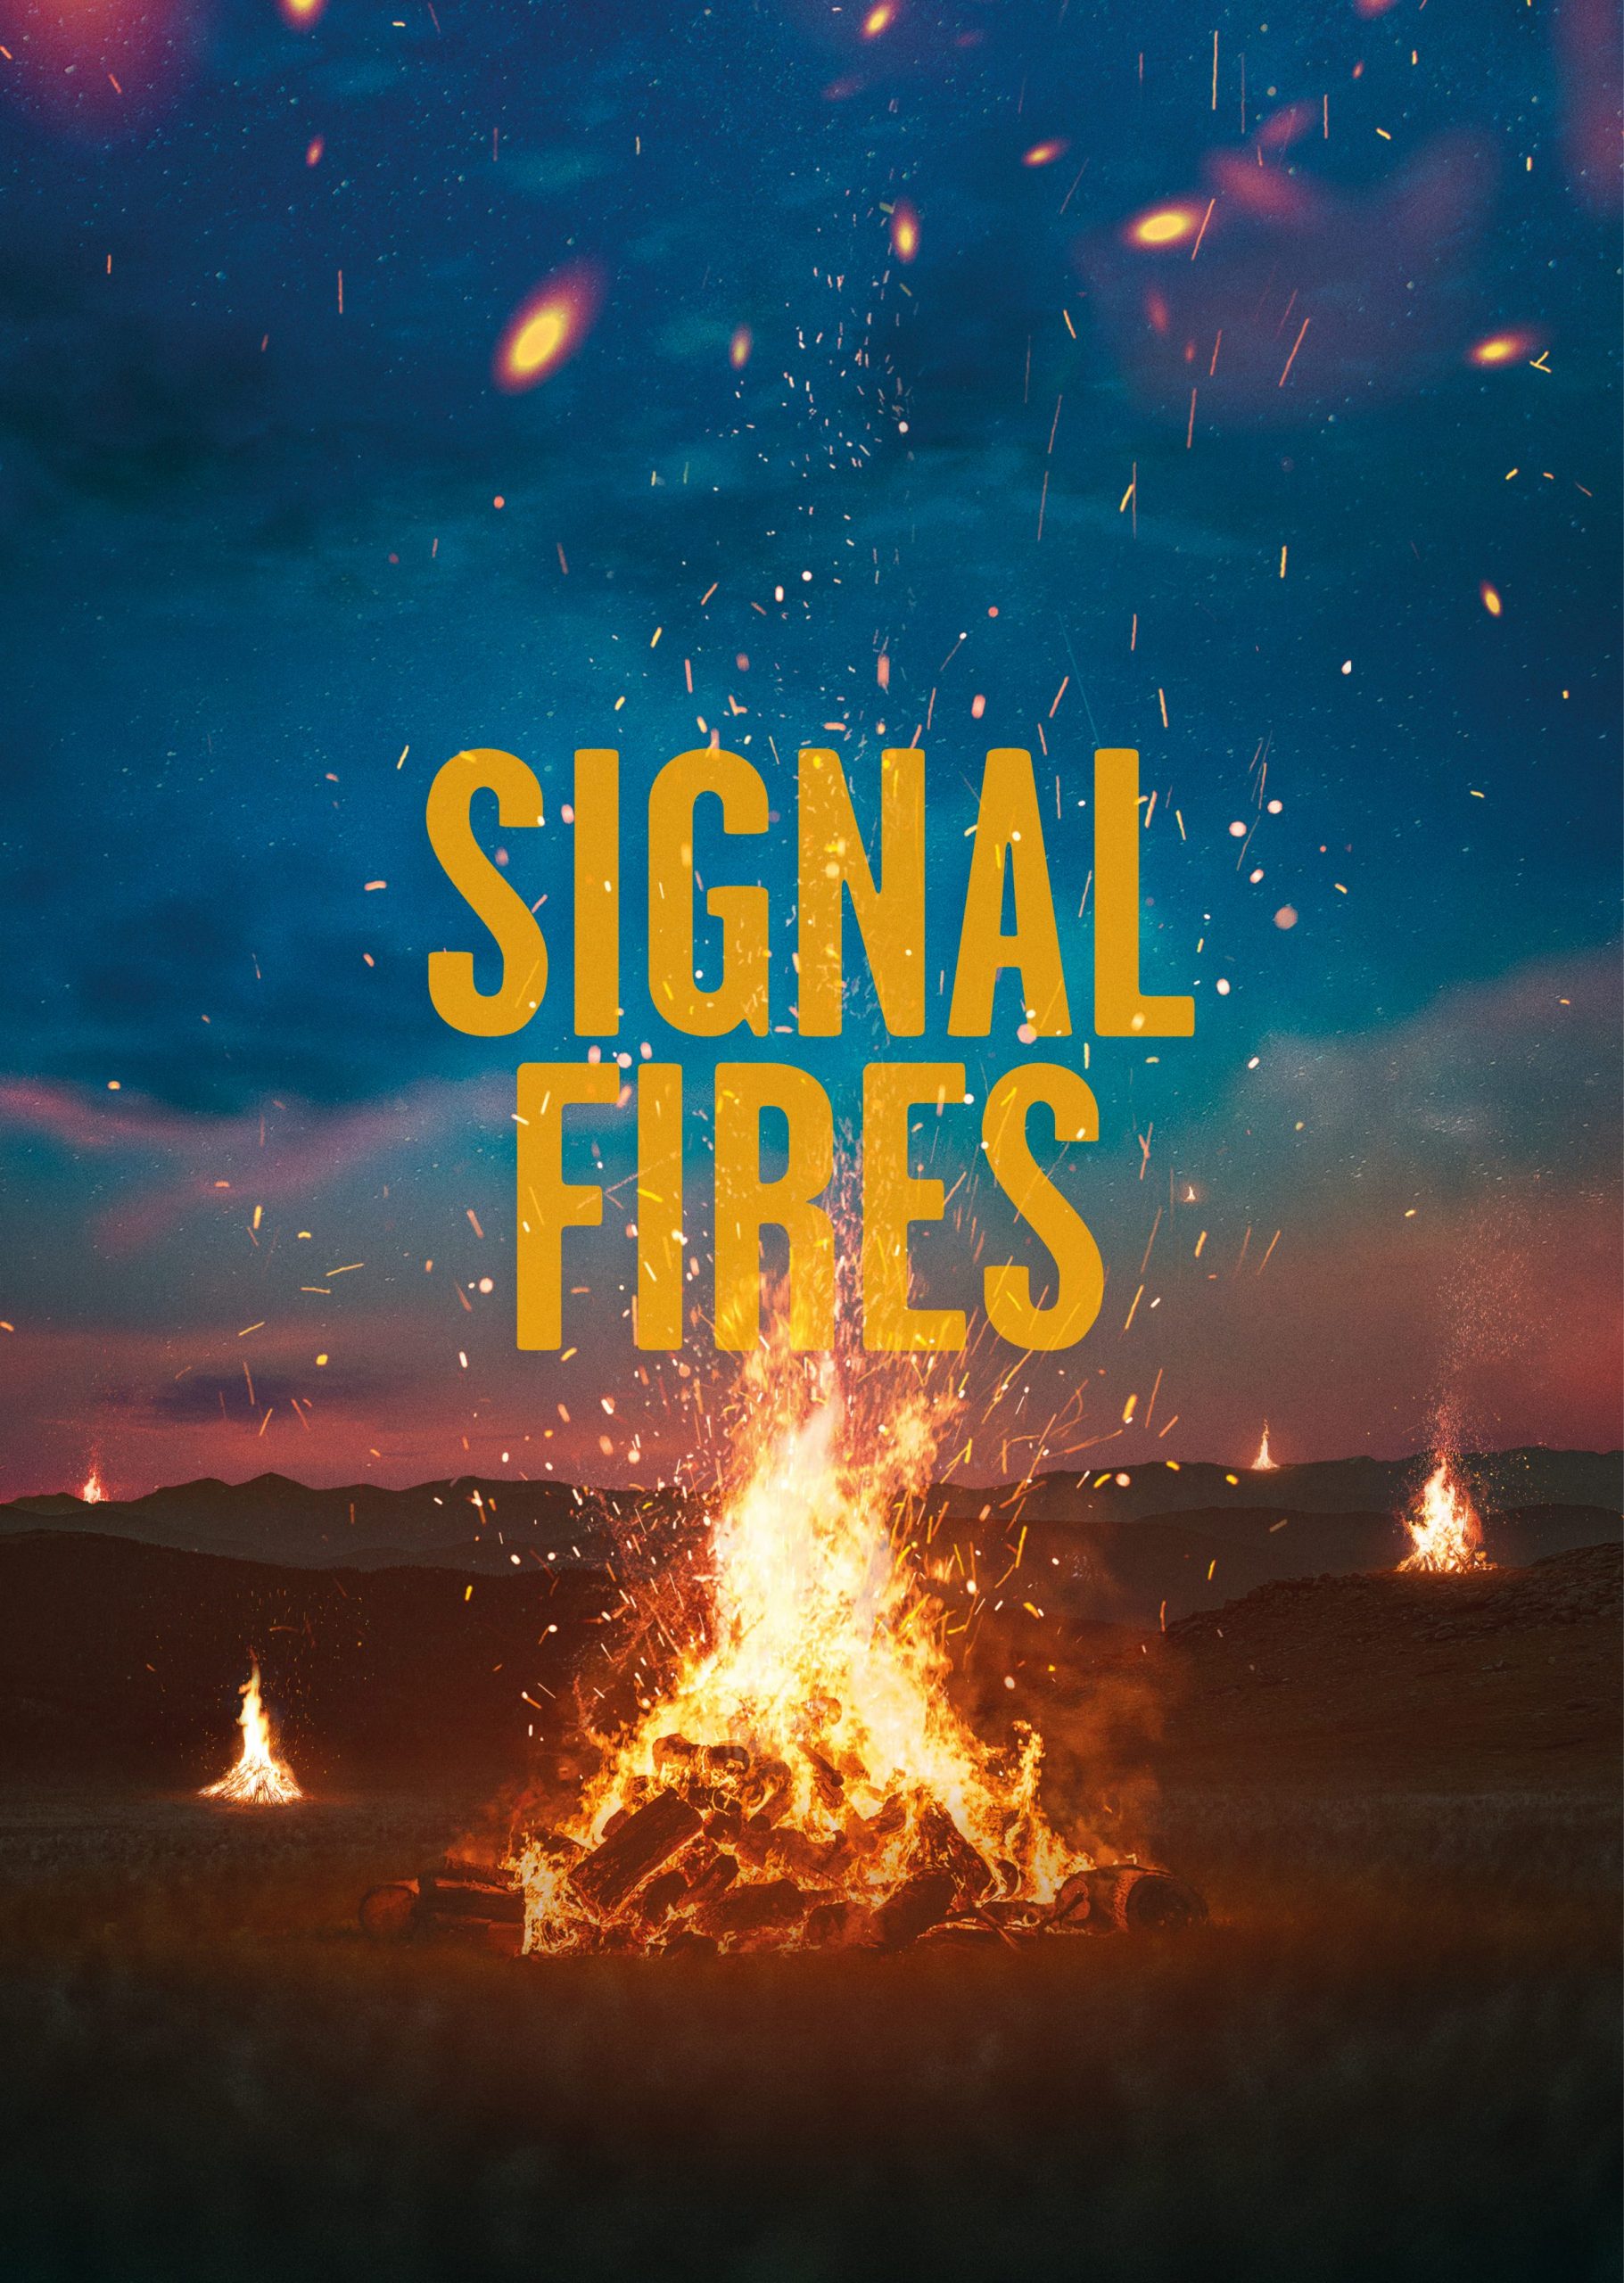 Signal Fire